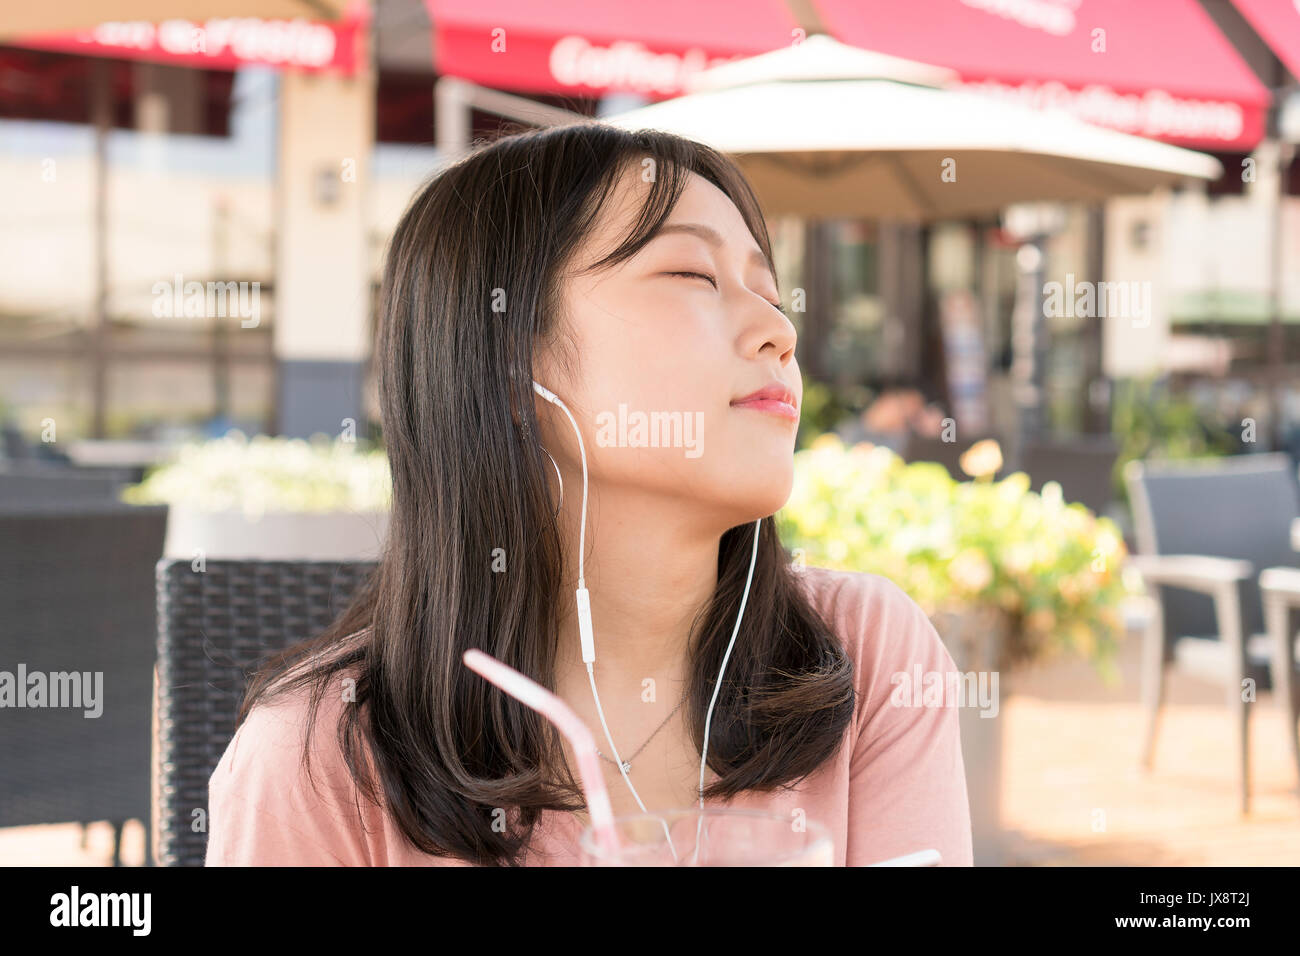 Chinese girl listening music Stock Photo